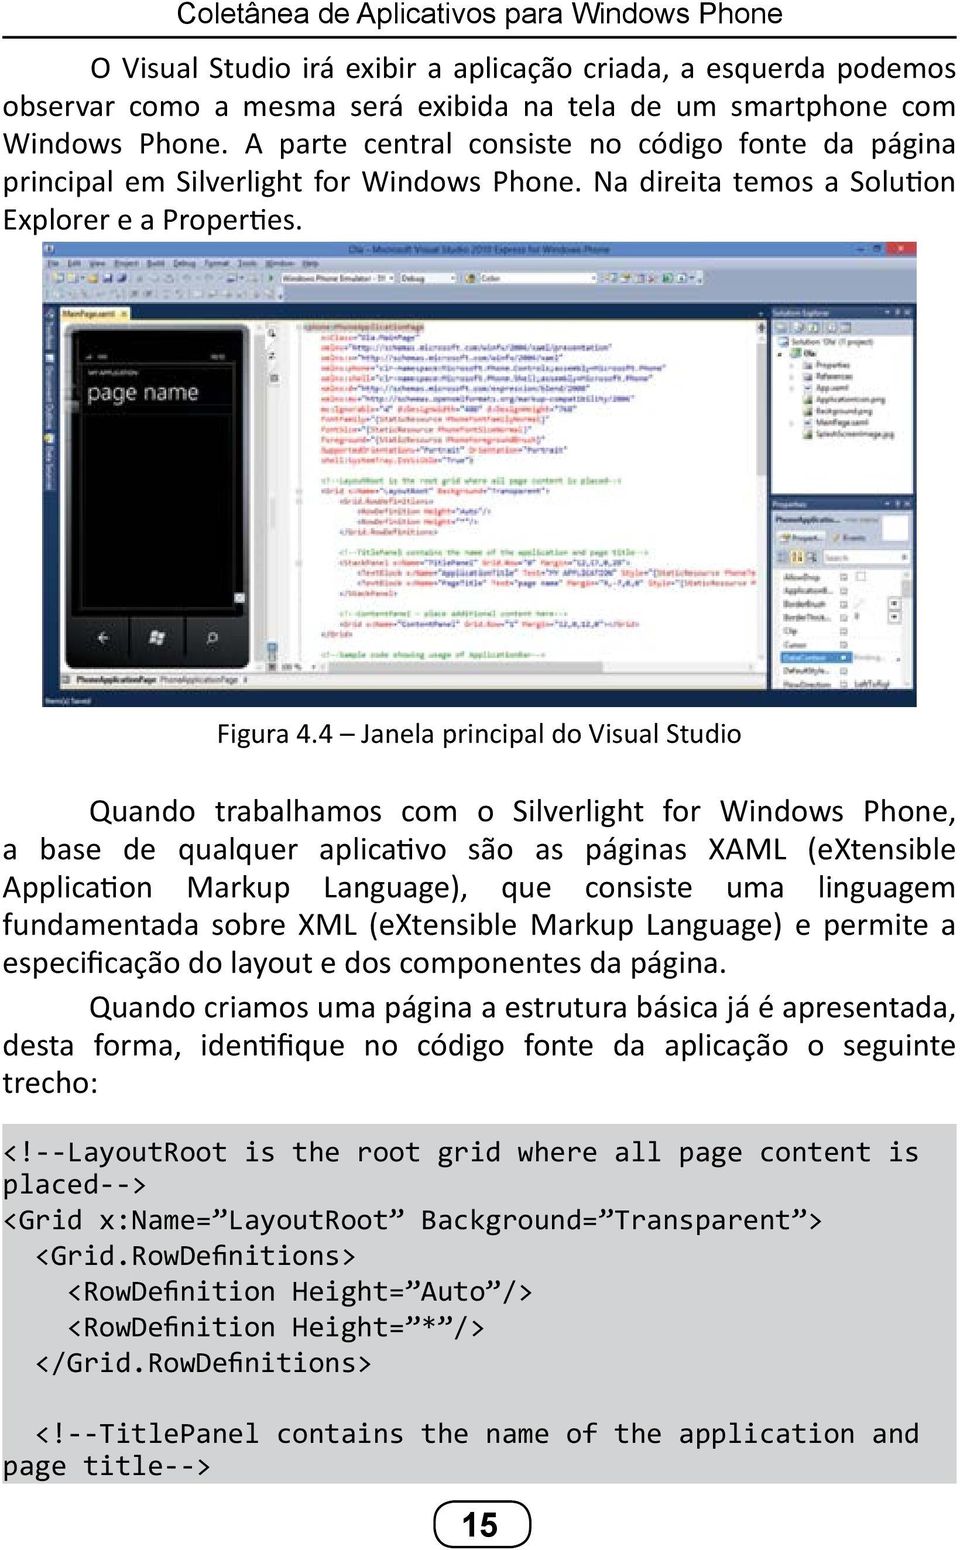 4 Janela principal do Visual Studio Quando trabalhamos com o Silverlight for Windows Phone, a base de qualquer aplicativo são as páginas XAML (extensible Application Markup Language), que consiste